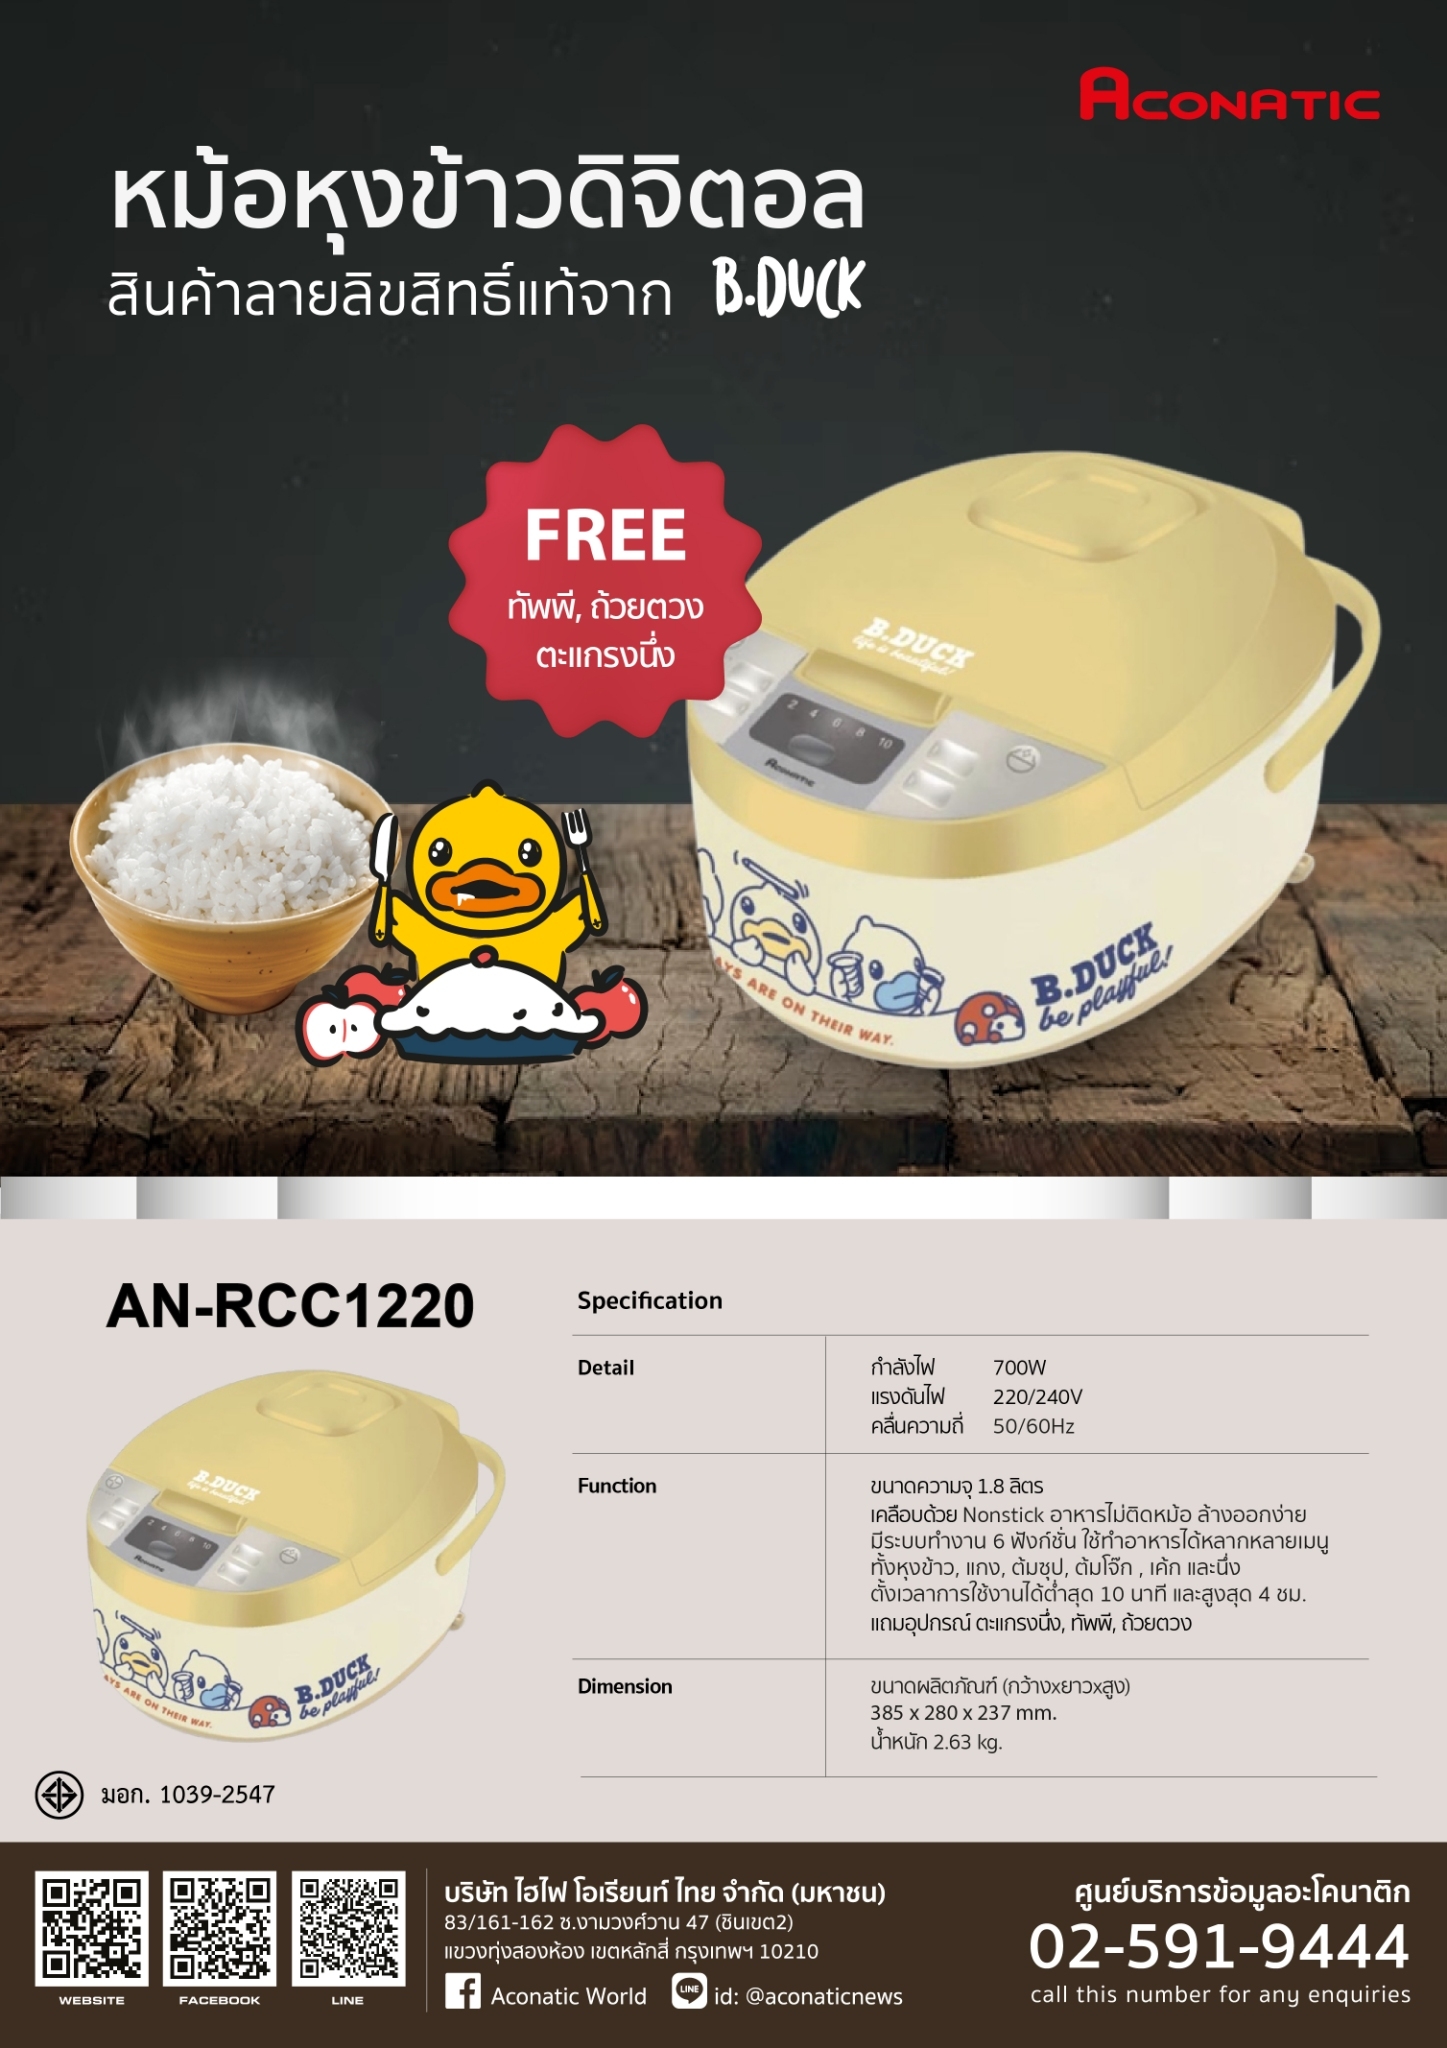 Rice cooker B-Duck model AN-RCC1220